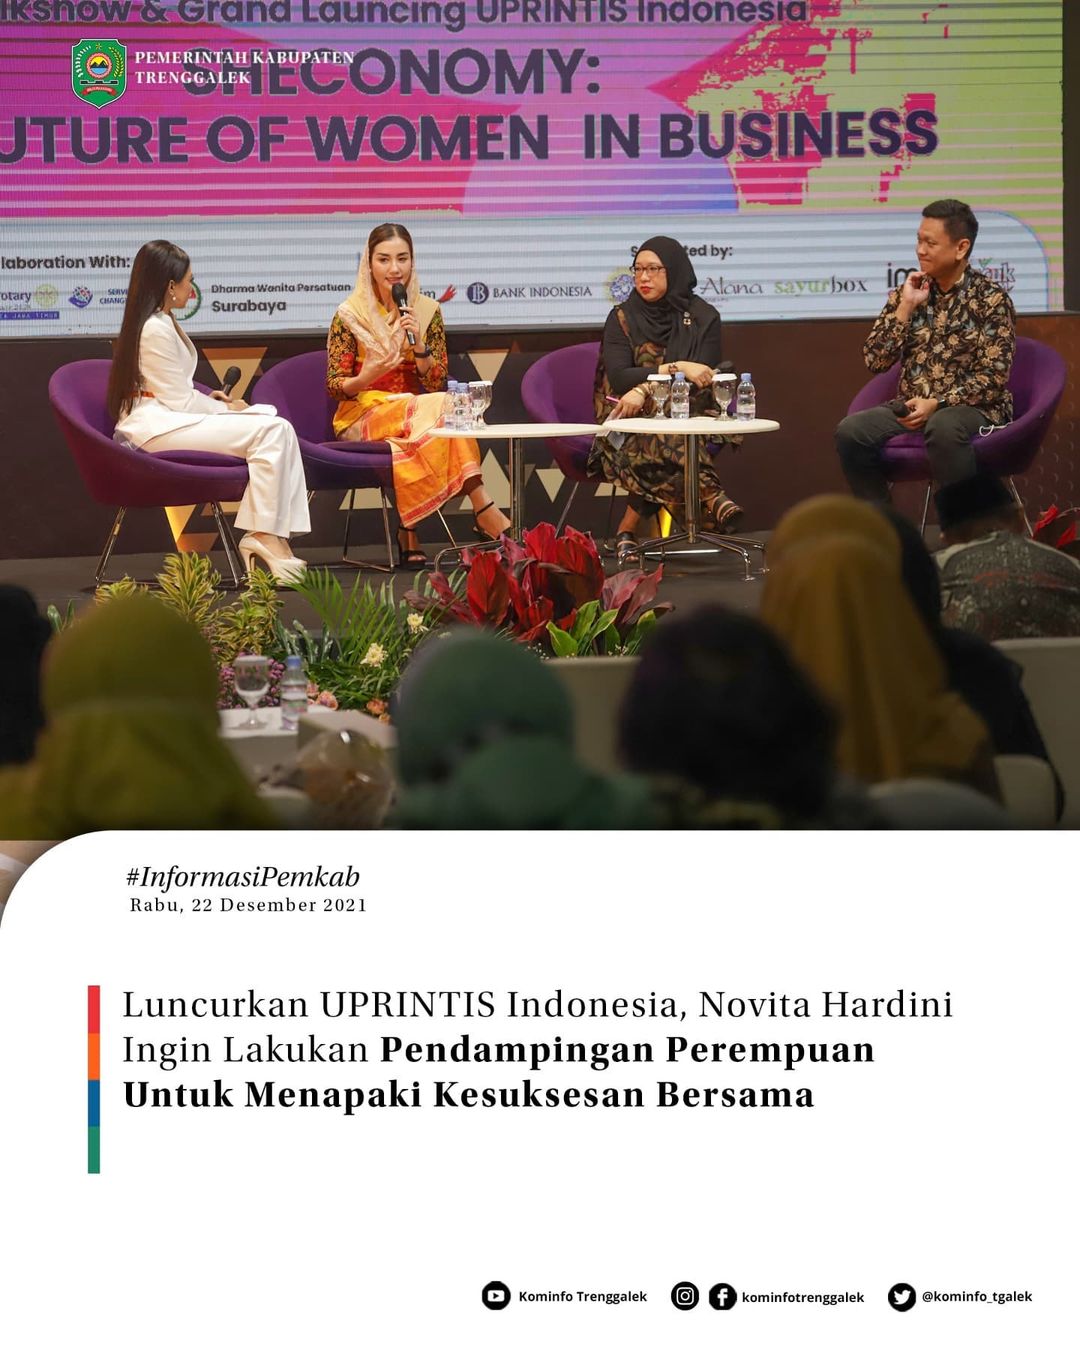 Luncurkan UPRINTIS Indonesia, Novita Hardini Ingin Lakukan Pendampingan Perempuan Untuk Menapaki Kesuksesan Bersama